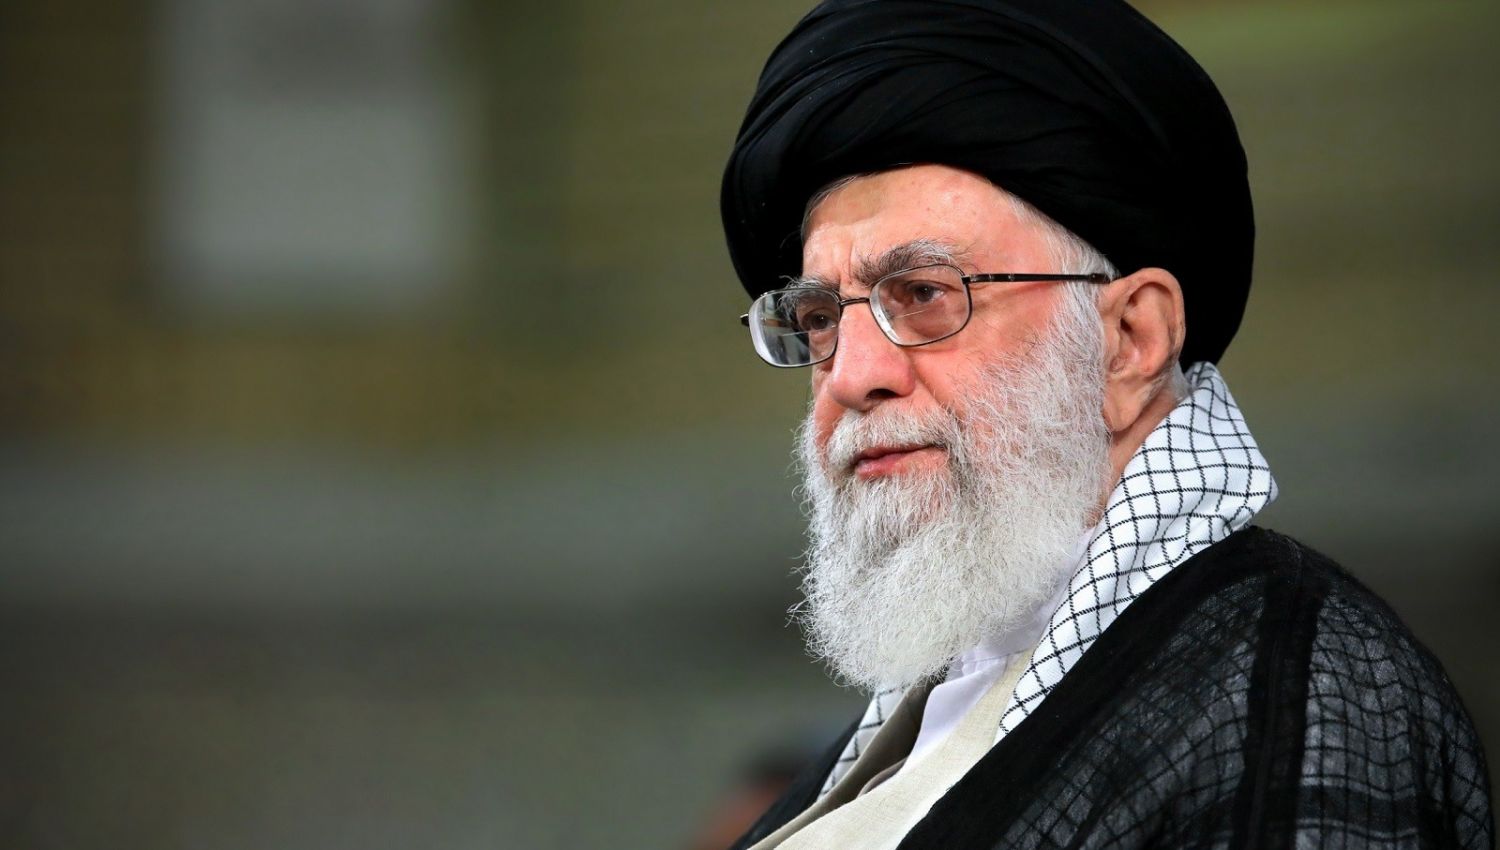 قائد الثورة الإسلامية يعزي بوفاة عقيلة شهيد المحراب السيد الحكيم